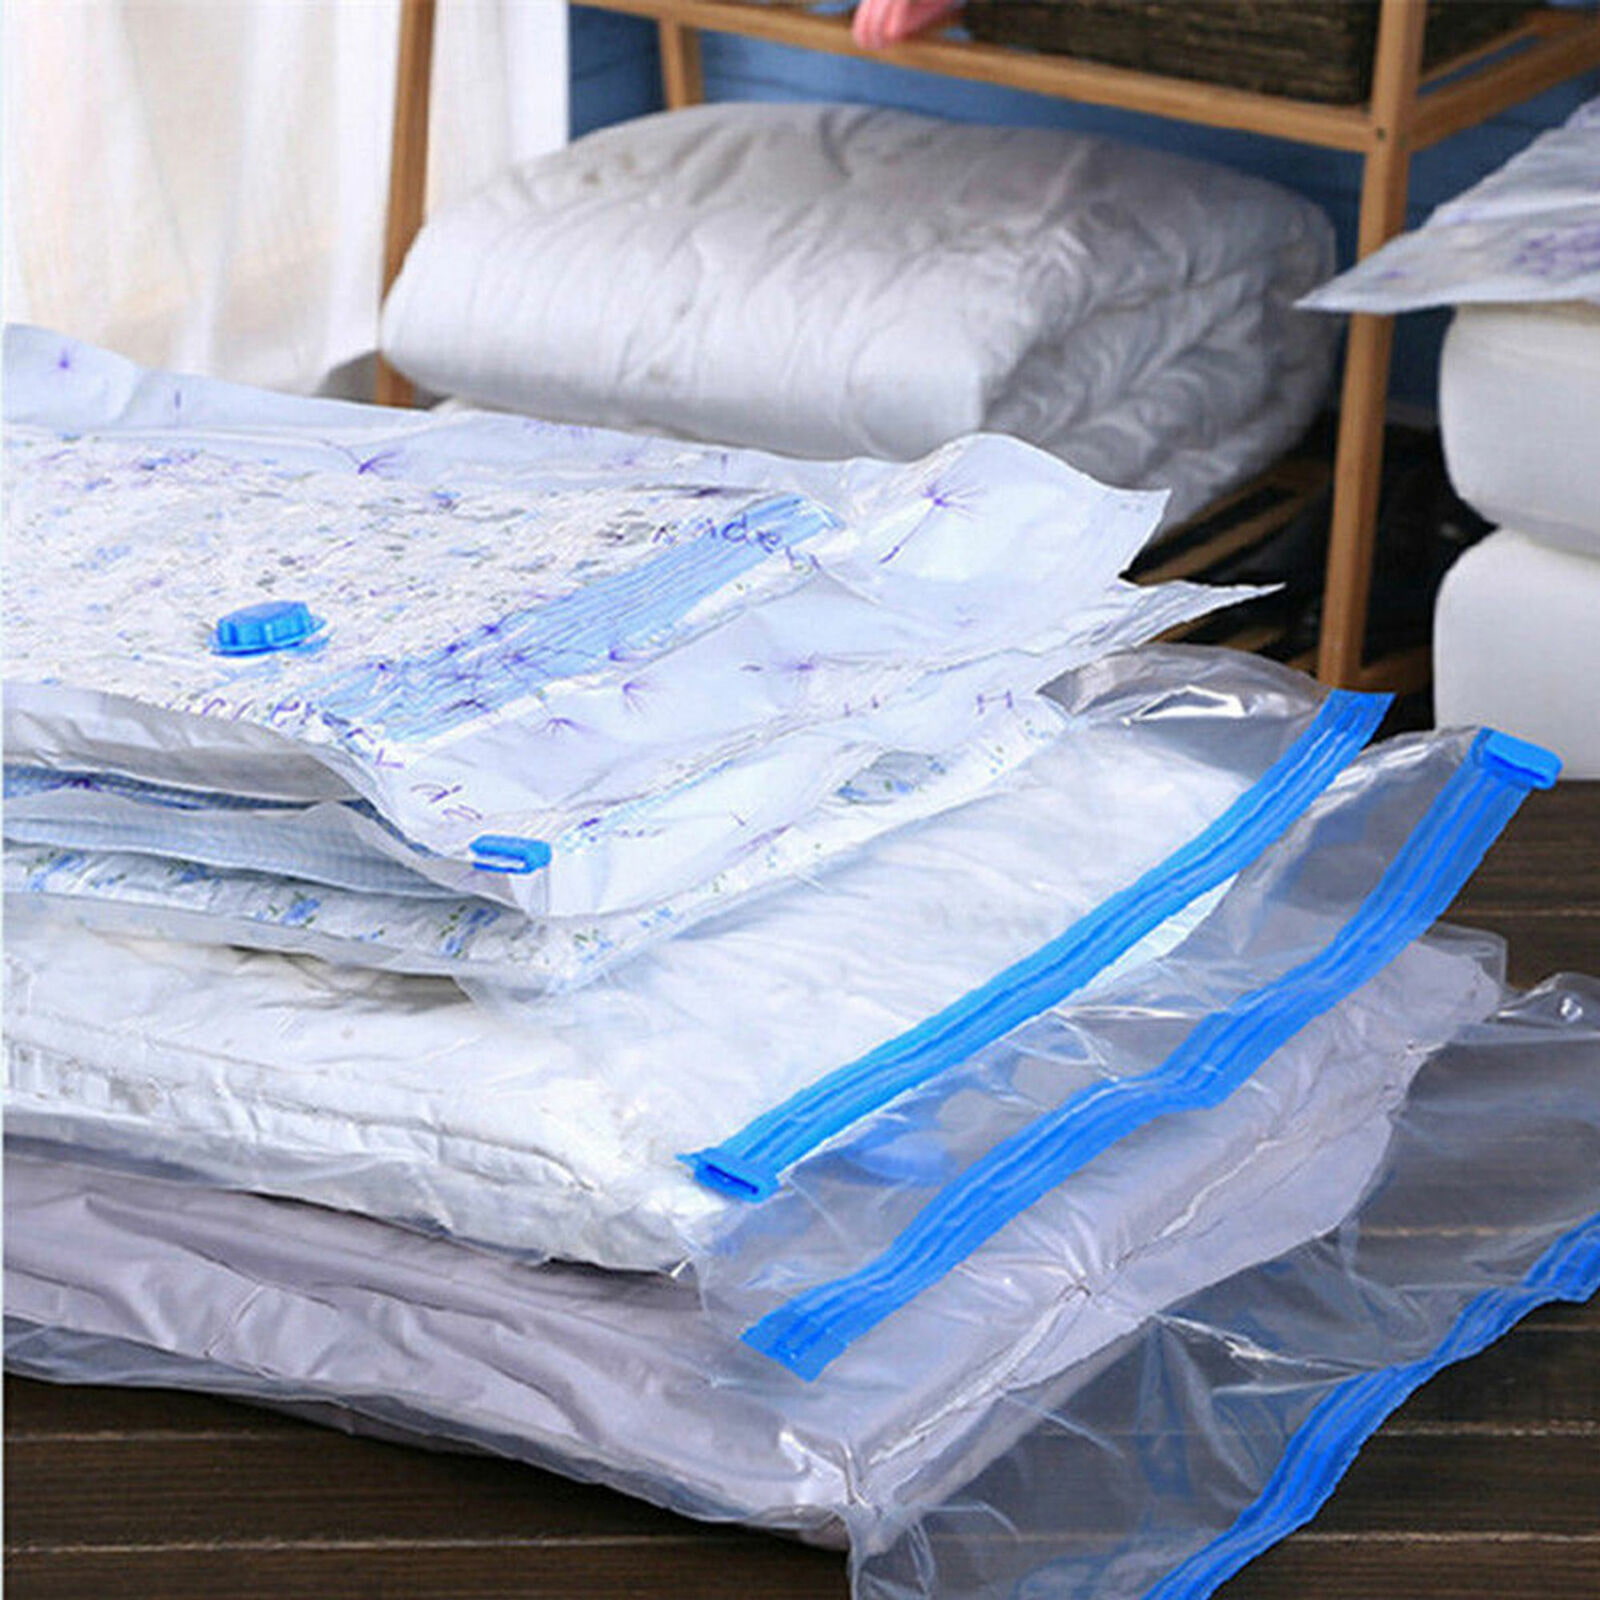 Как лучше организовать хранение постельного белья? – 7 отличных идей .